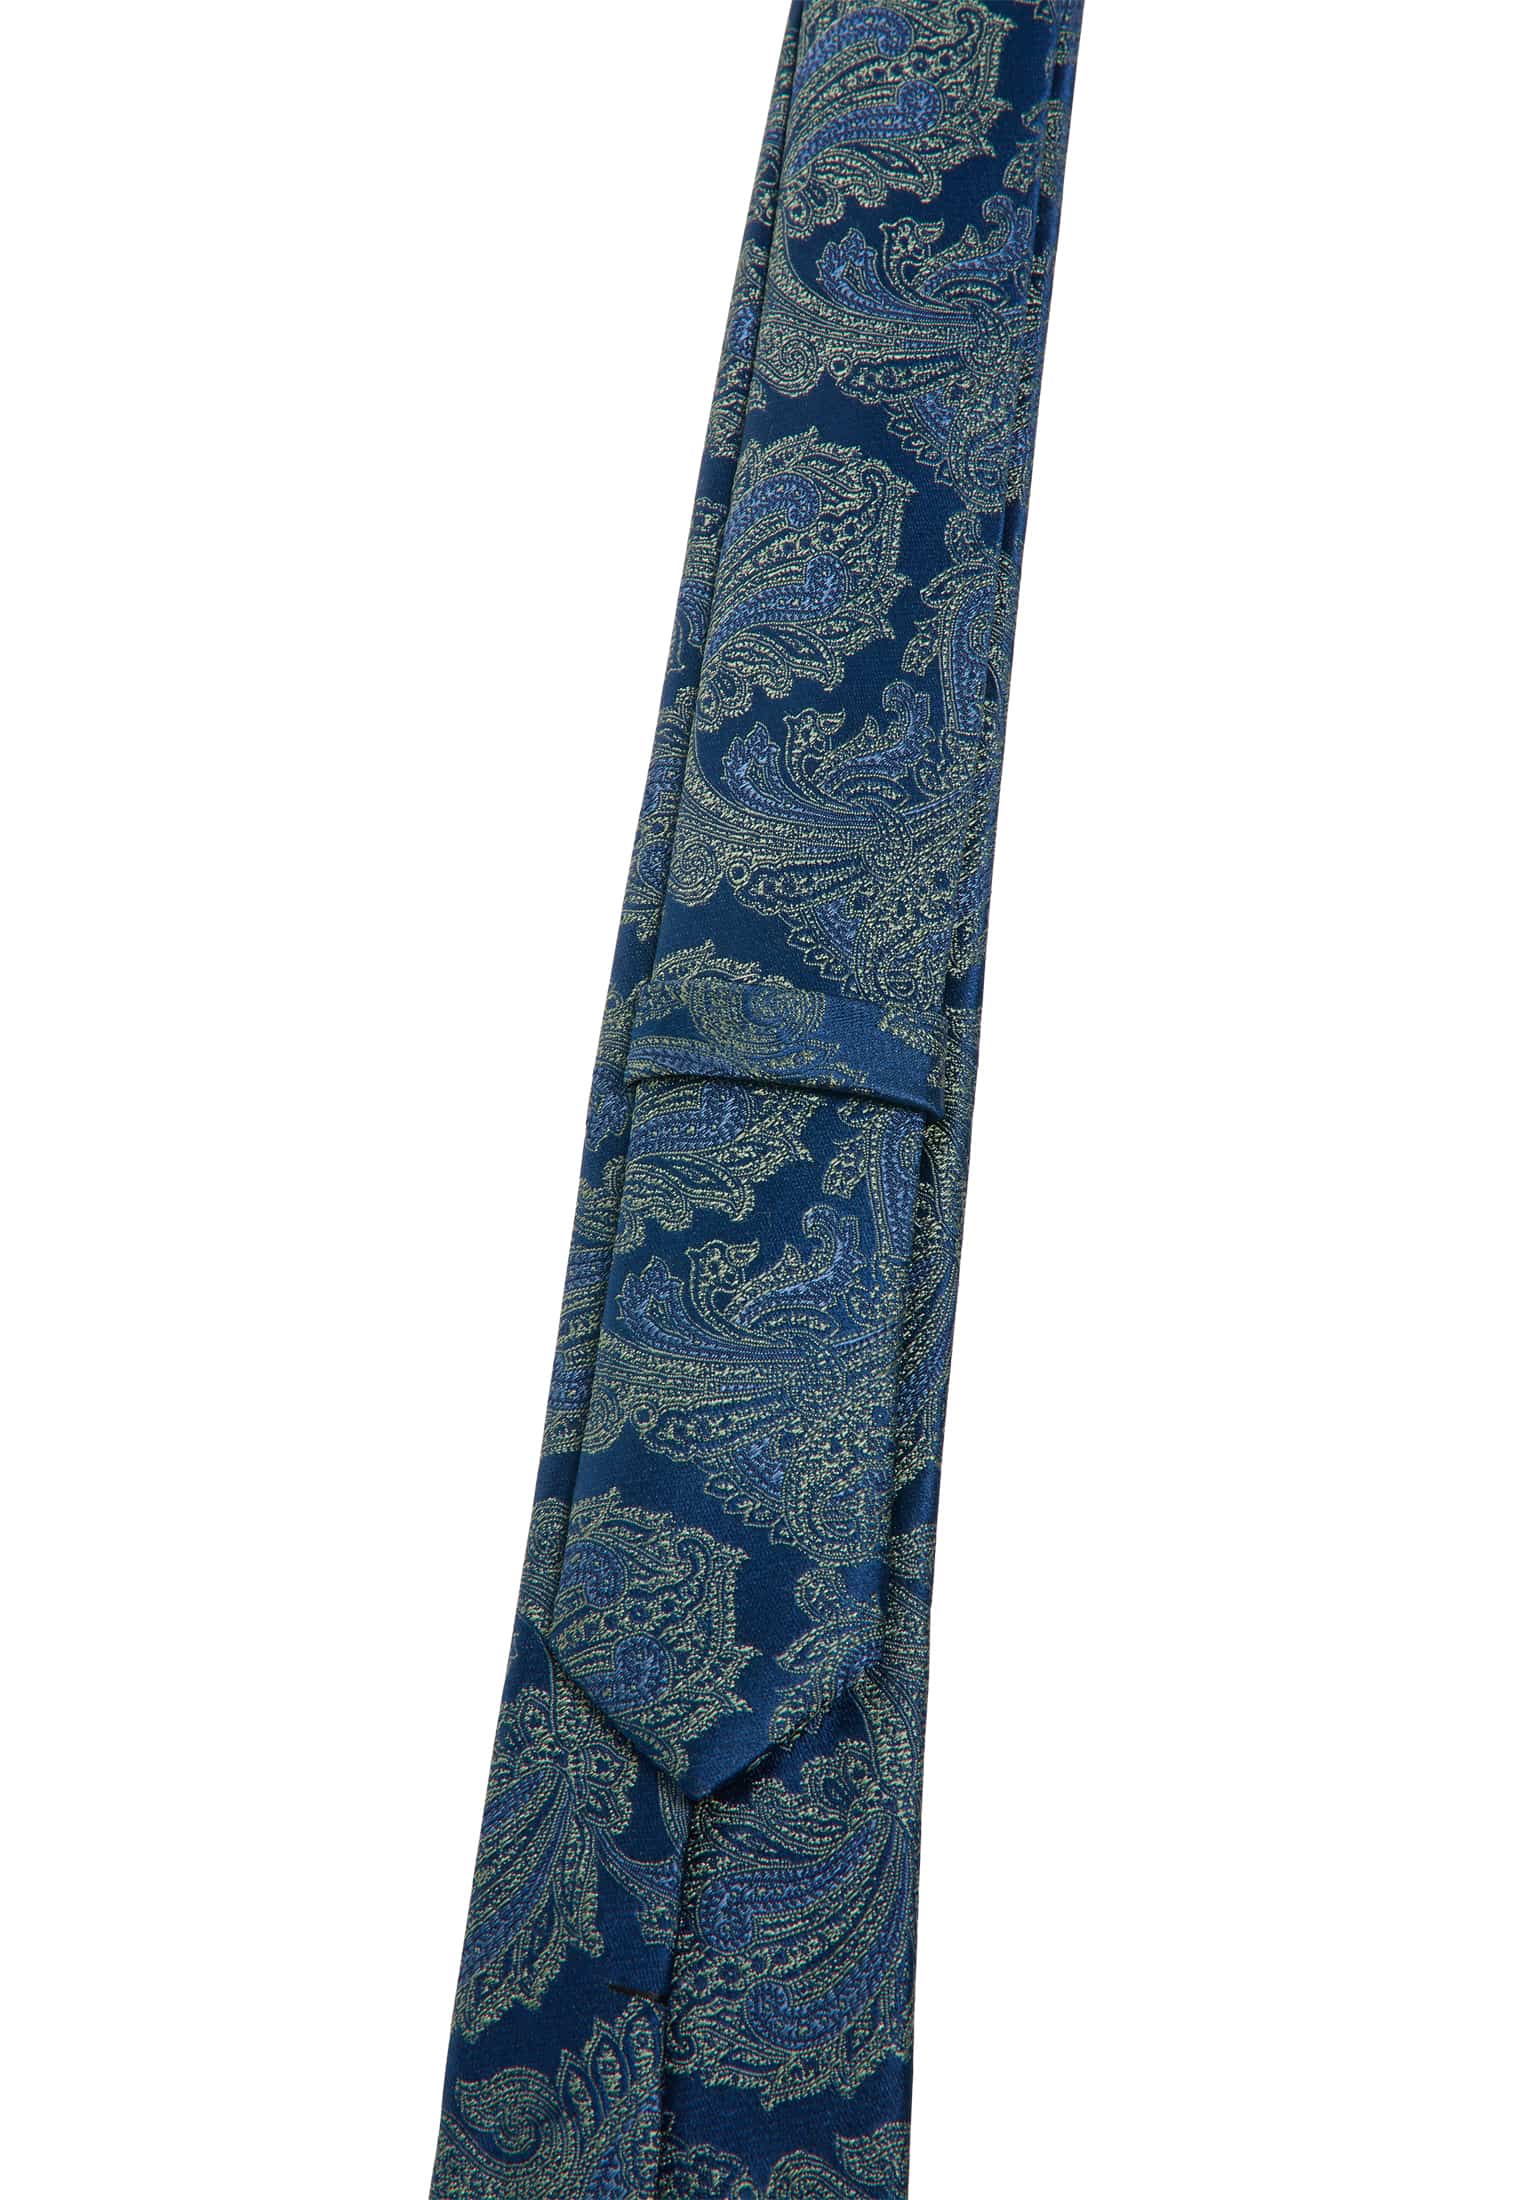 Tie in blue/green patterned